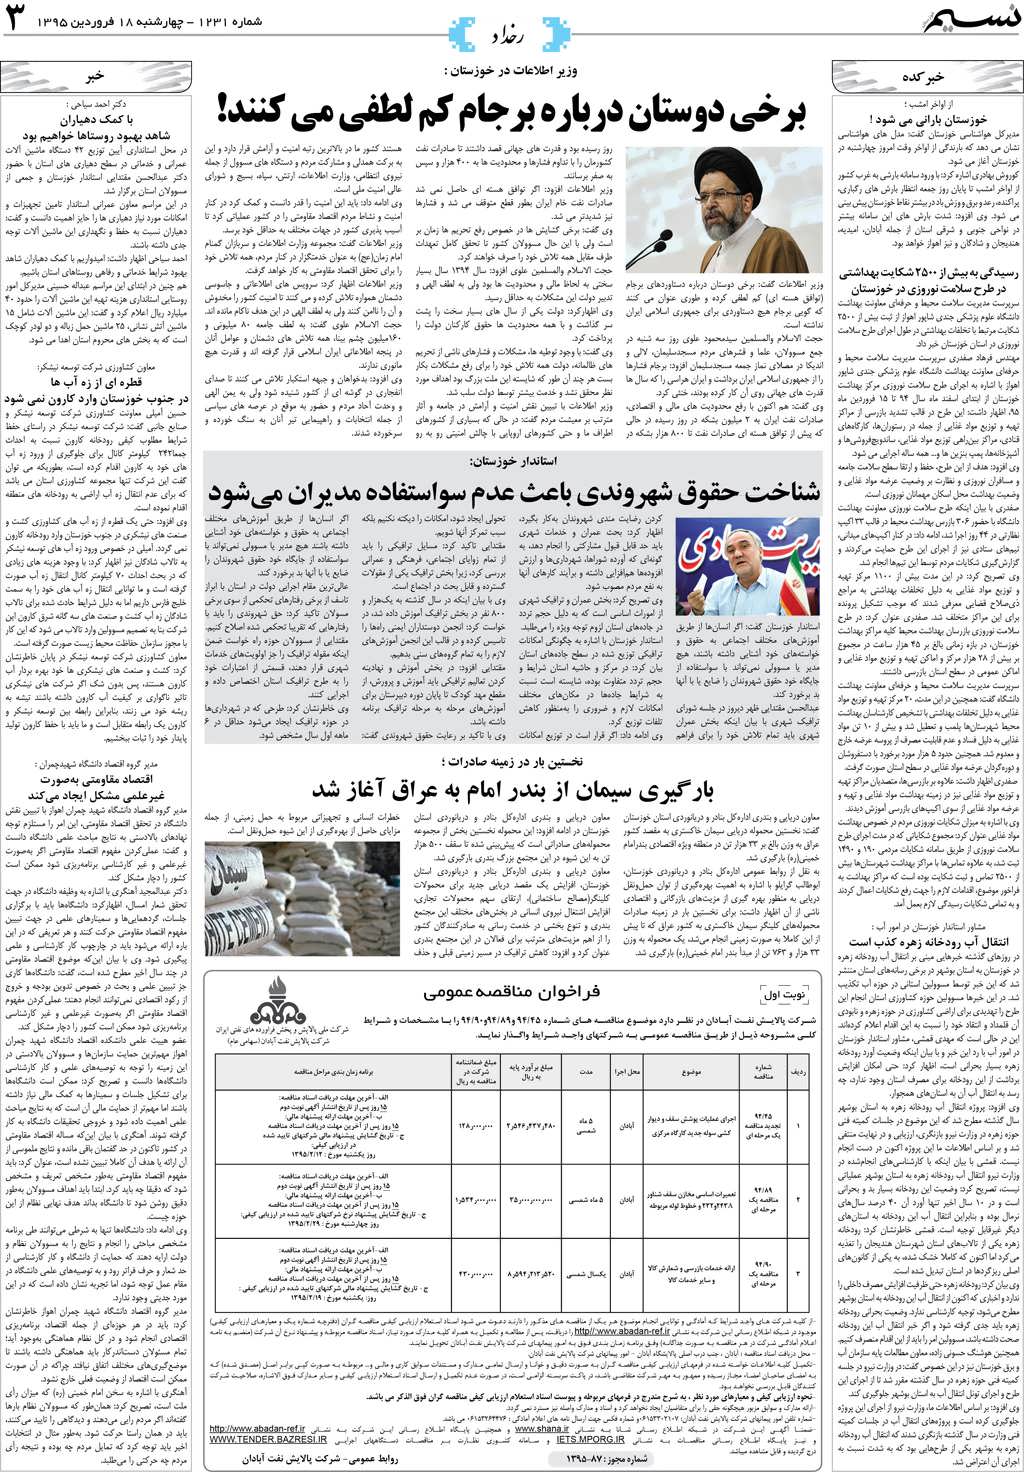 صفحه رخداد روزنامه نسیم شماره 1231